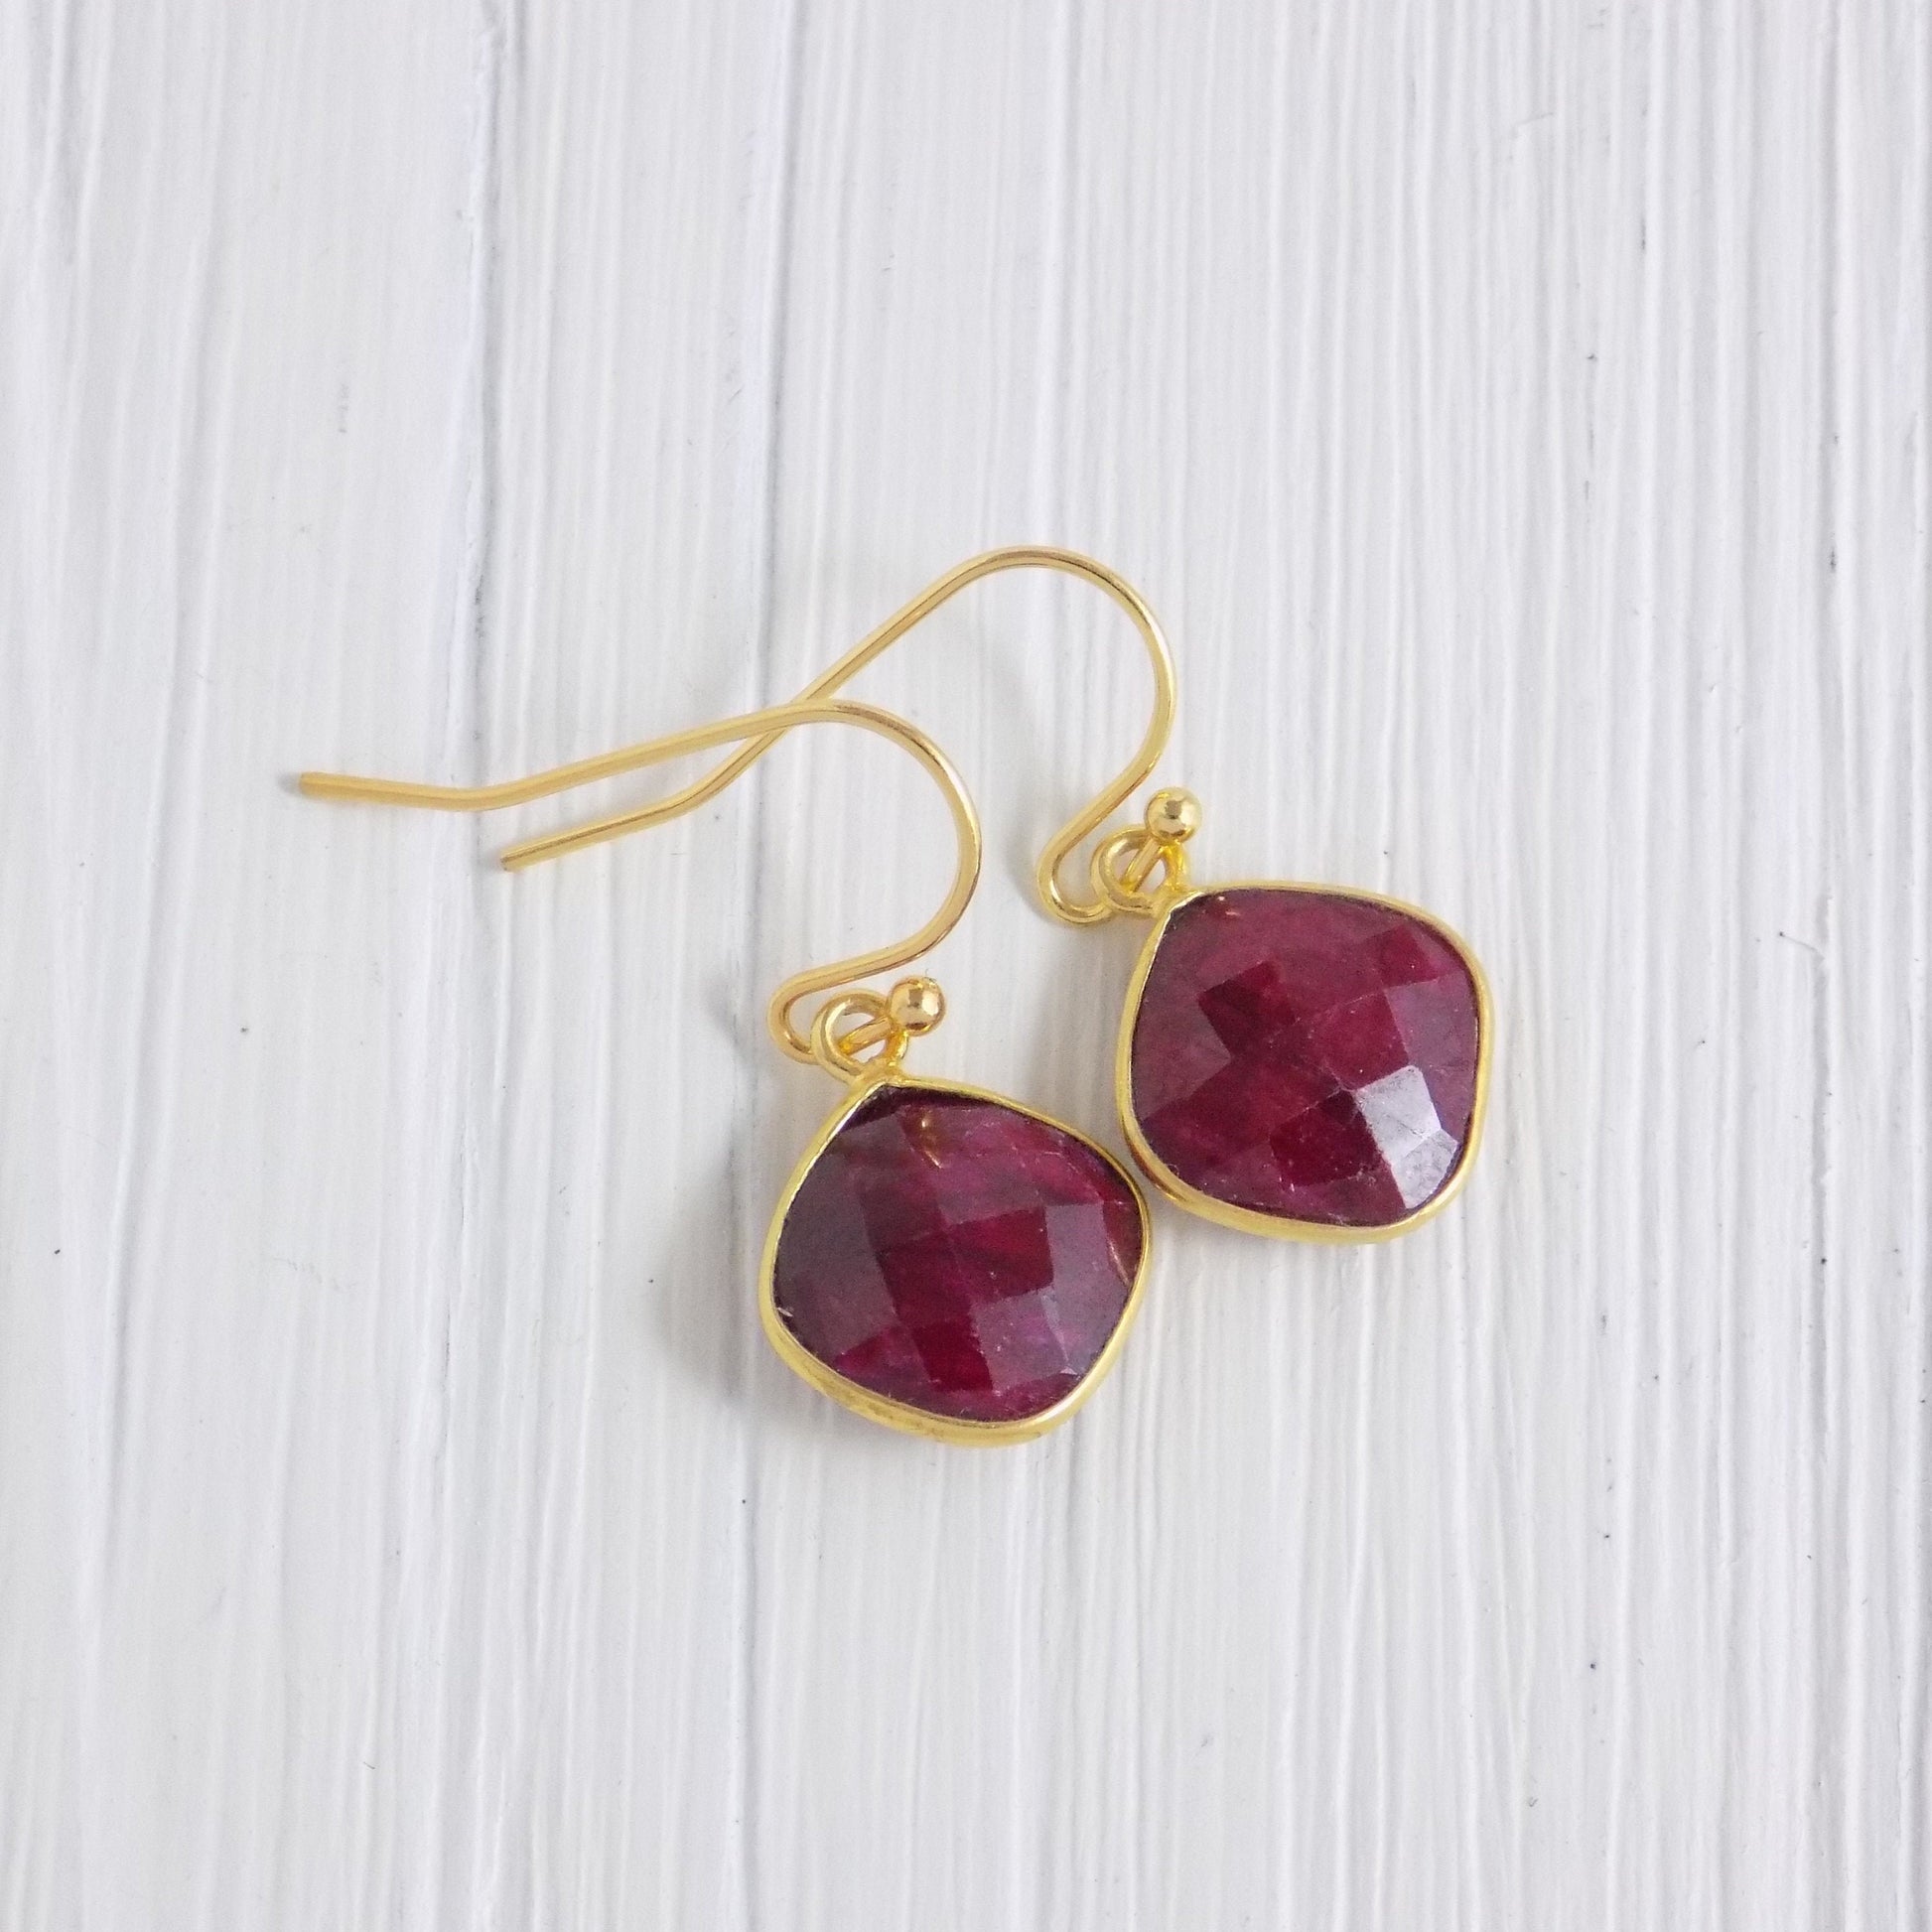 Cushion Cut Raw Ruby Drop Earrings Gold, July Birthstone, Dark Pink Gemstone, Gifts For Mom, M3-14